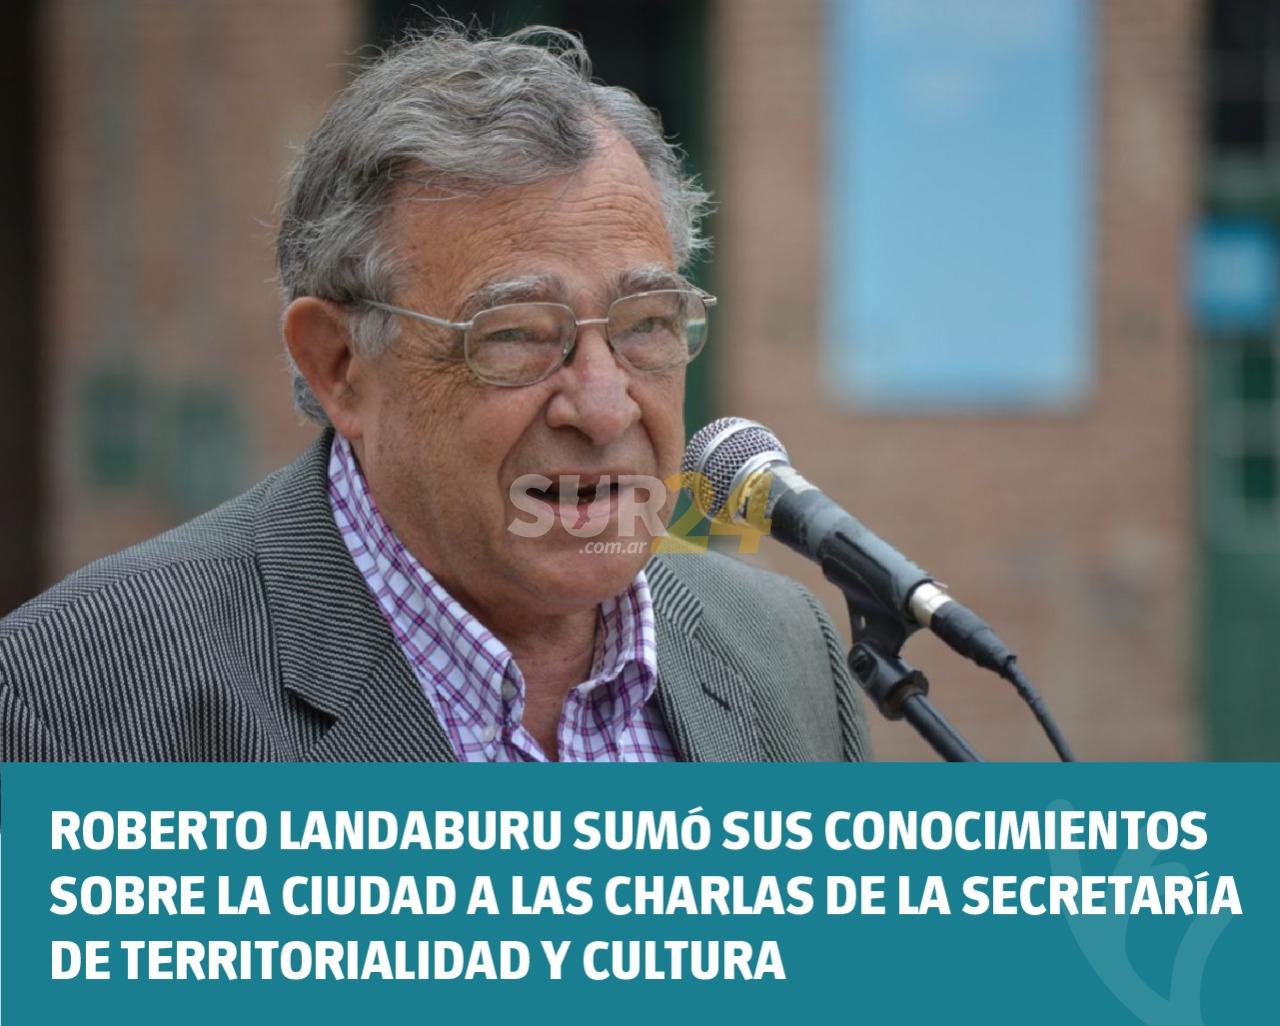 Roberto Landaburu sumó sus conocimientos sobre la ciudad